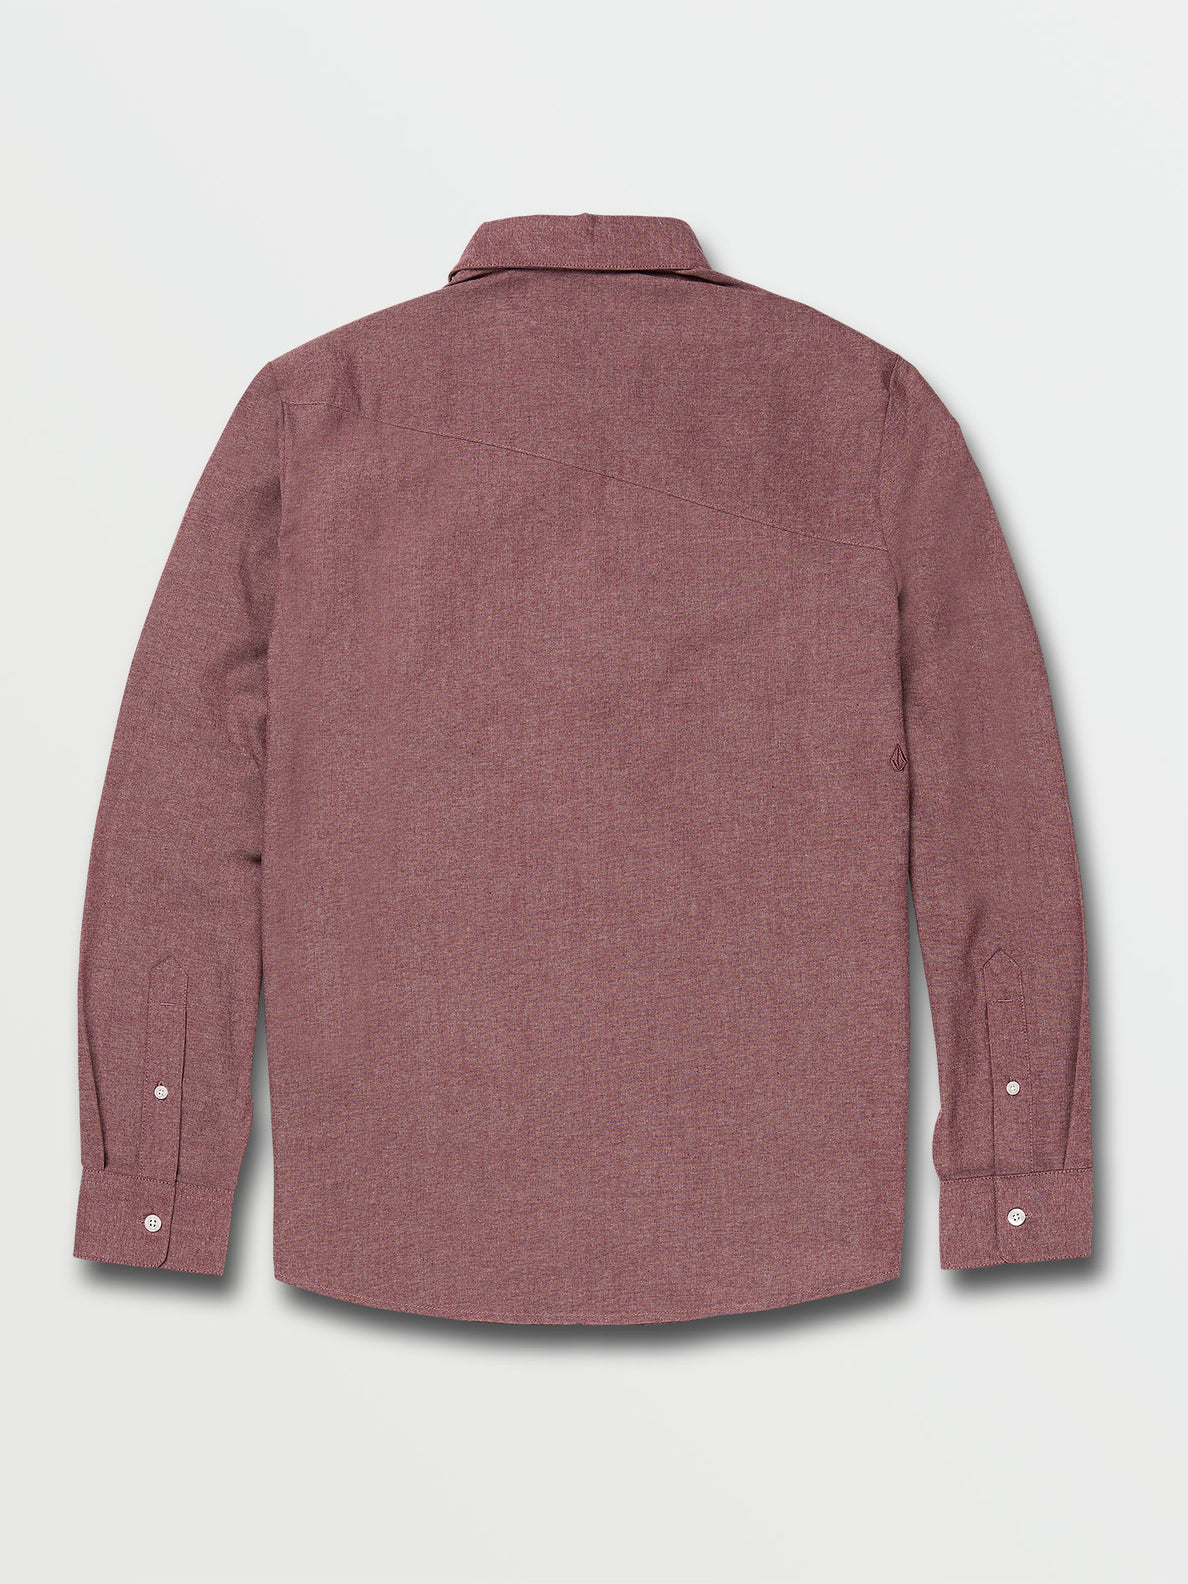 Curwin Long Sleeve Shirt - Merlot (A05318R0_MER) [B]